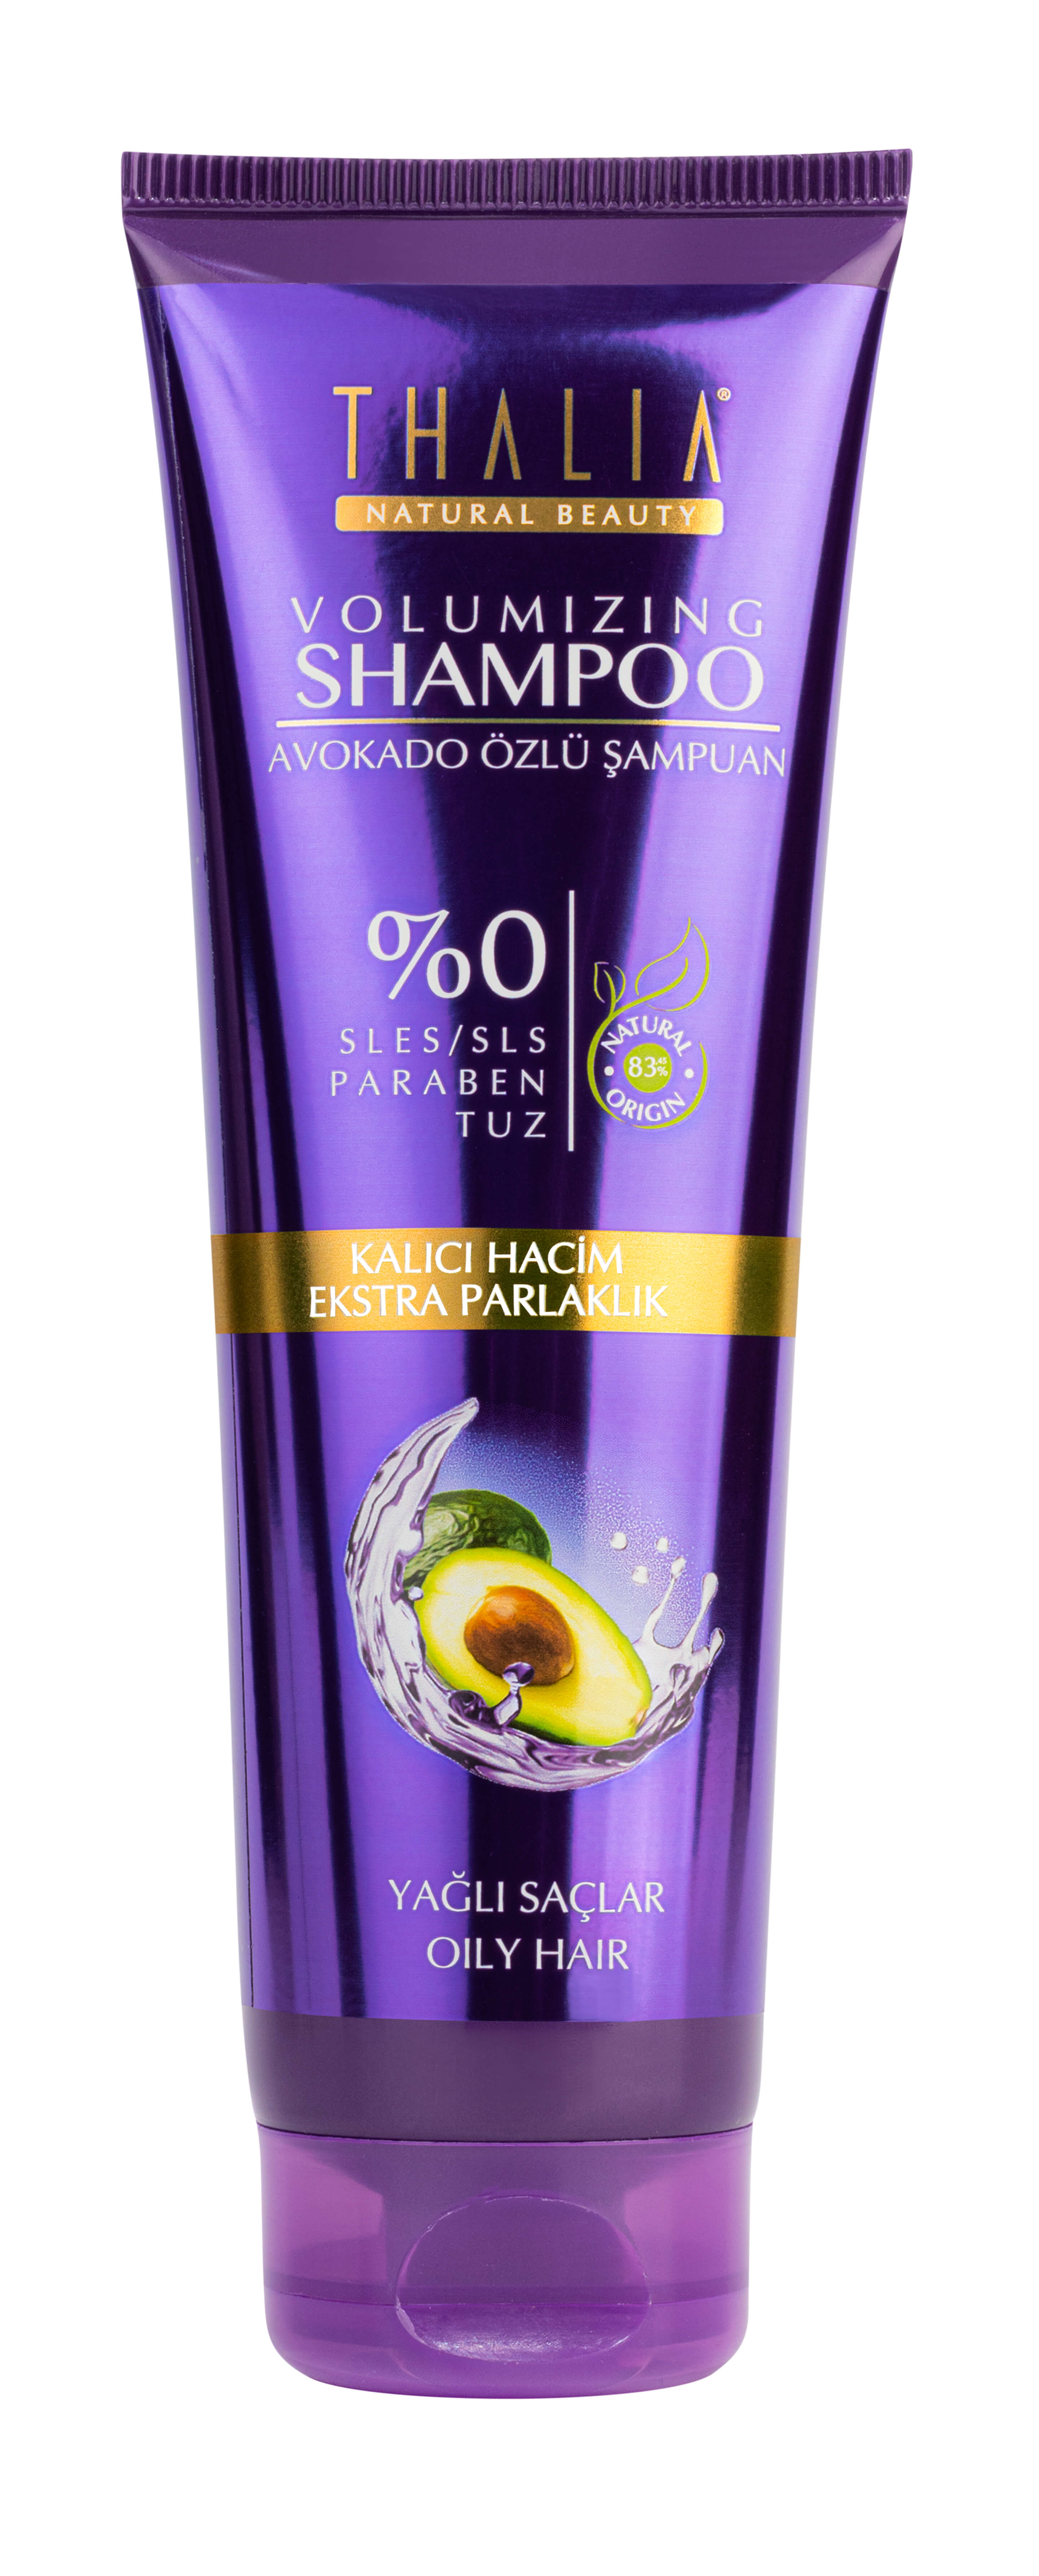 Thalia Avokado Özlü Yağlı Saçlar İçin Hacim Verici Bakım Şampuanı - 300 ml